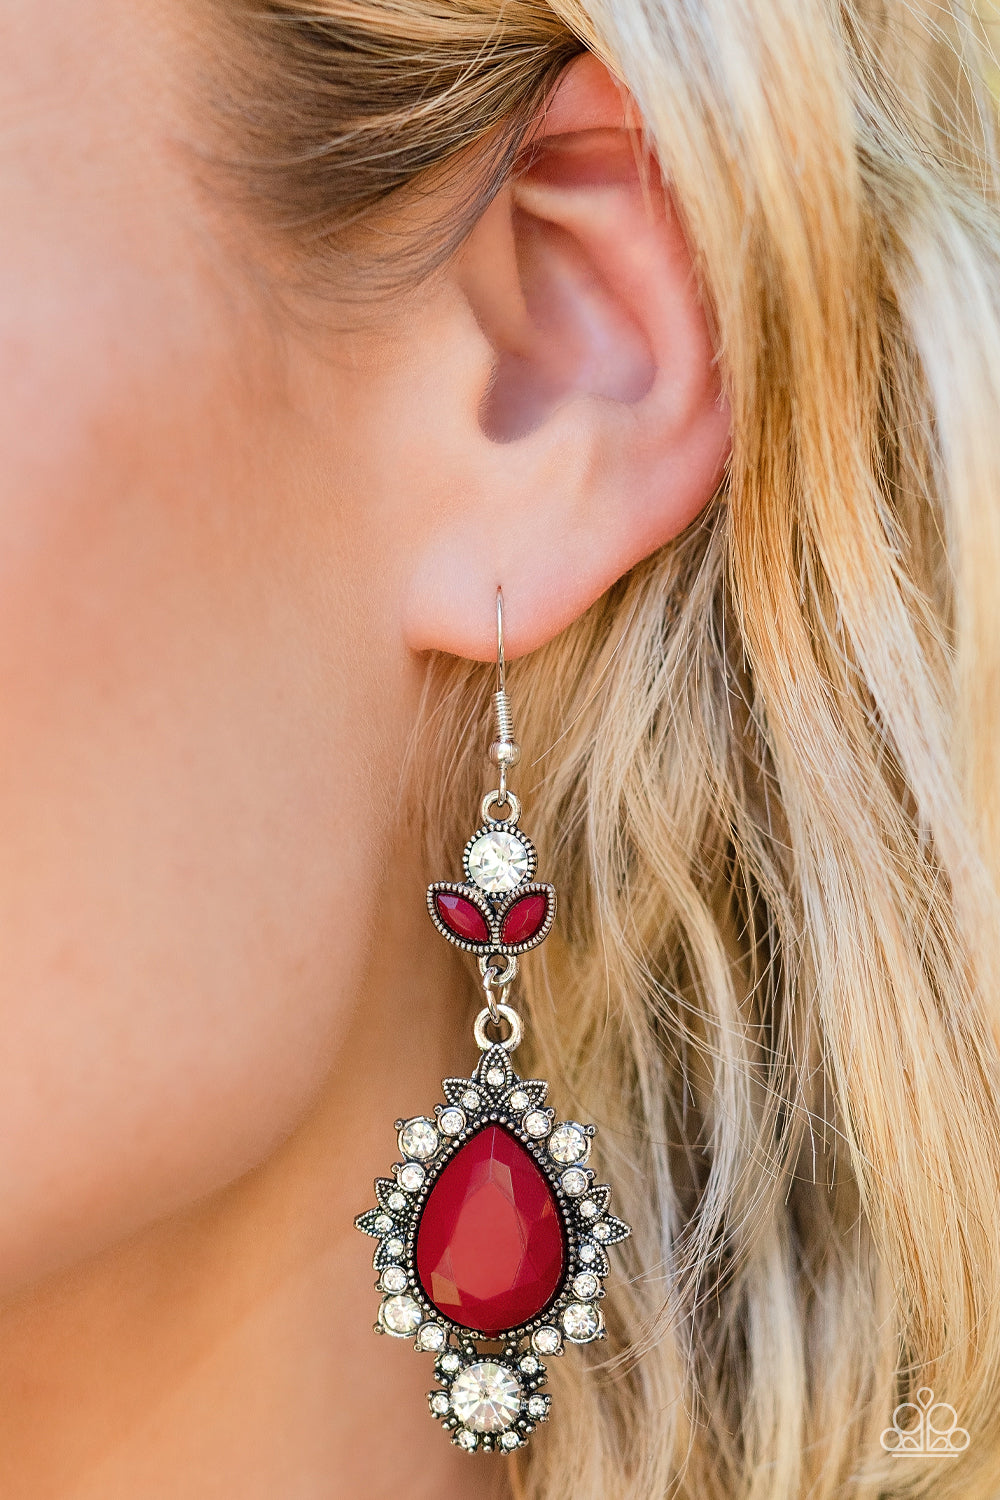 Paparazzi SELFIE-Esteem - Red Earrings - A Finishing Touch Jewelry